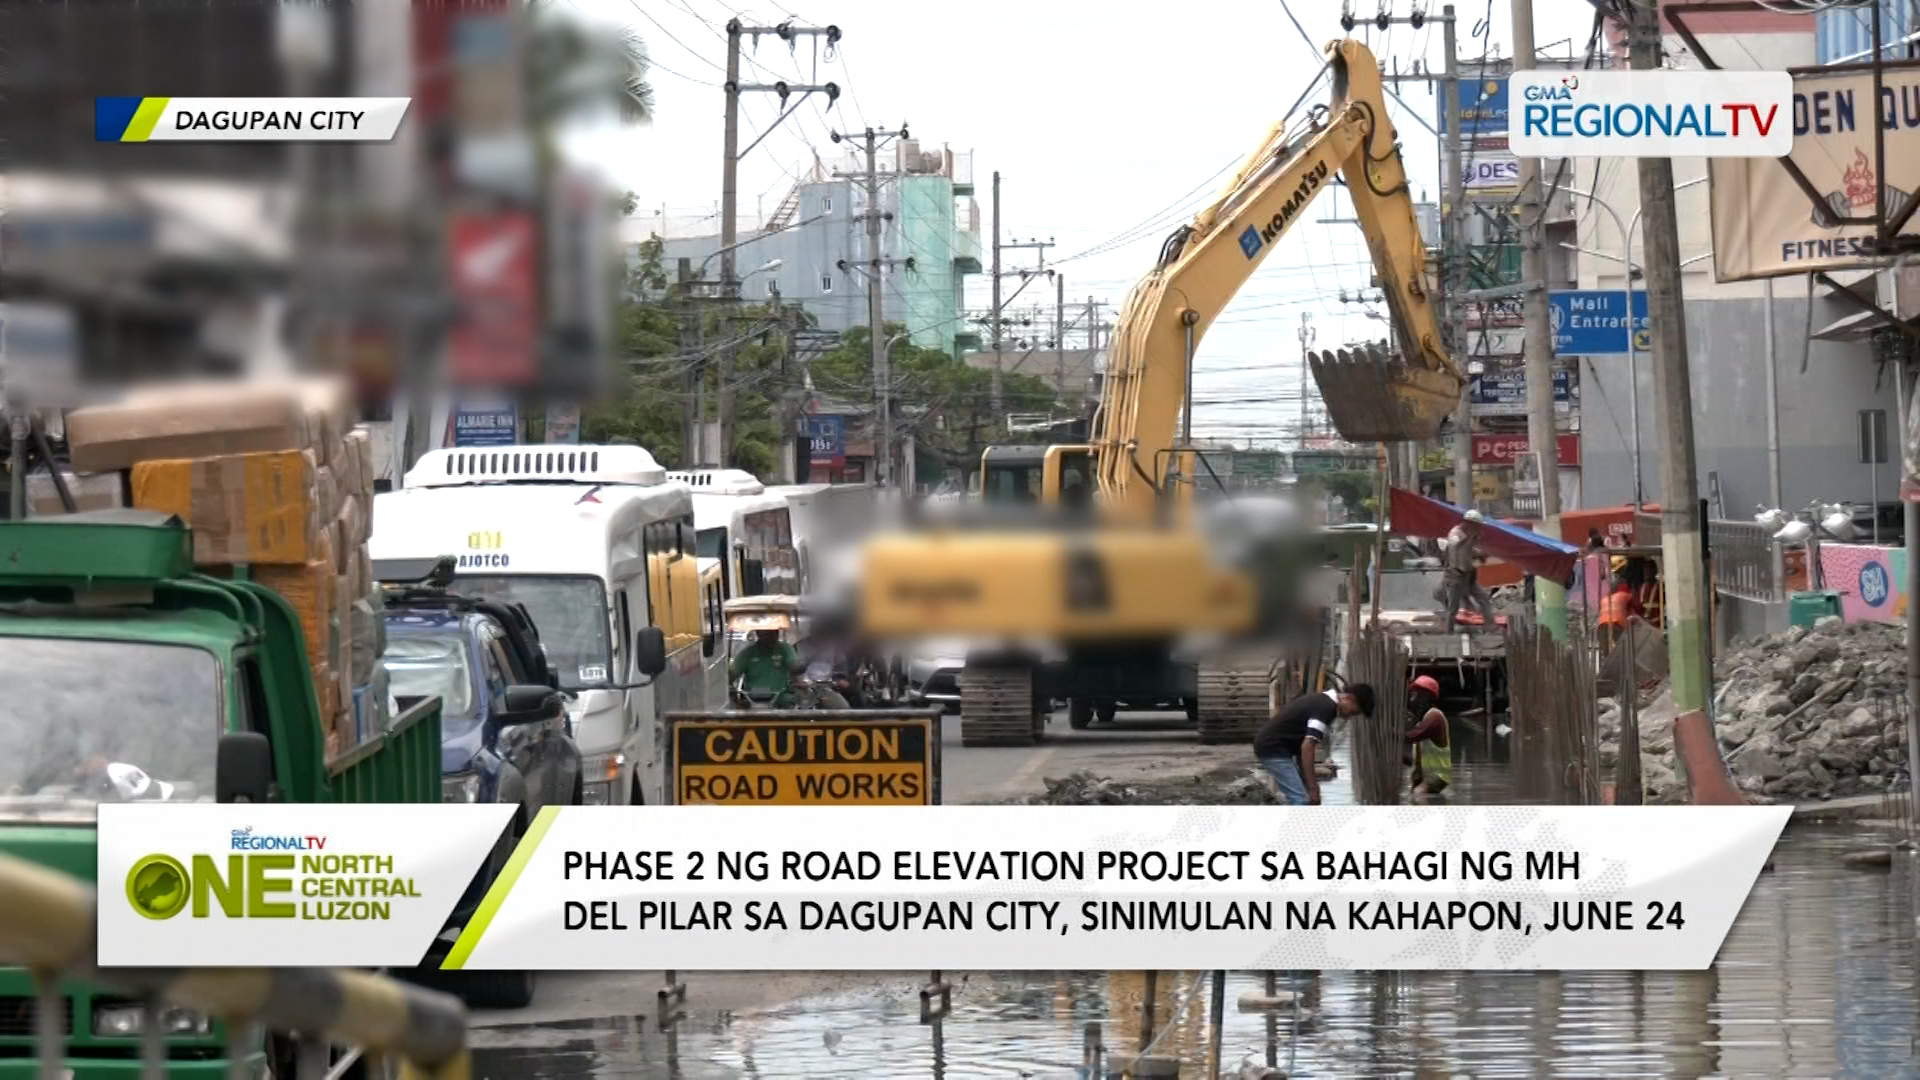 Phase 2 ng road elevation project sa bahagi ng MH Del Pilar, sinimulan na